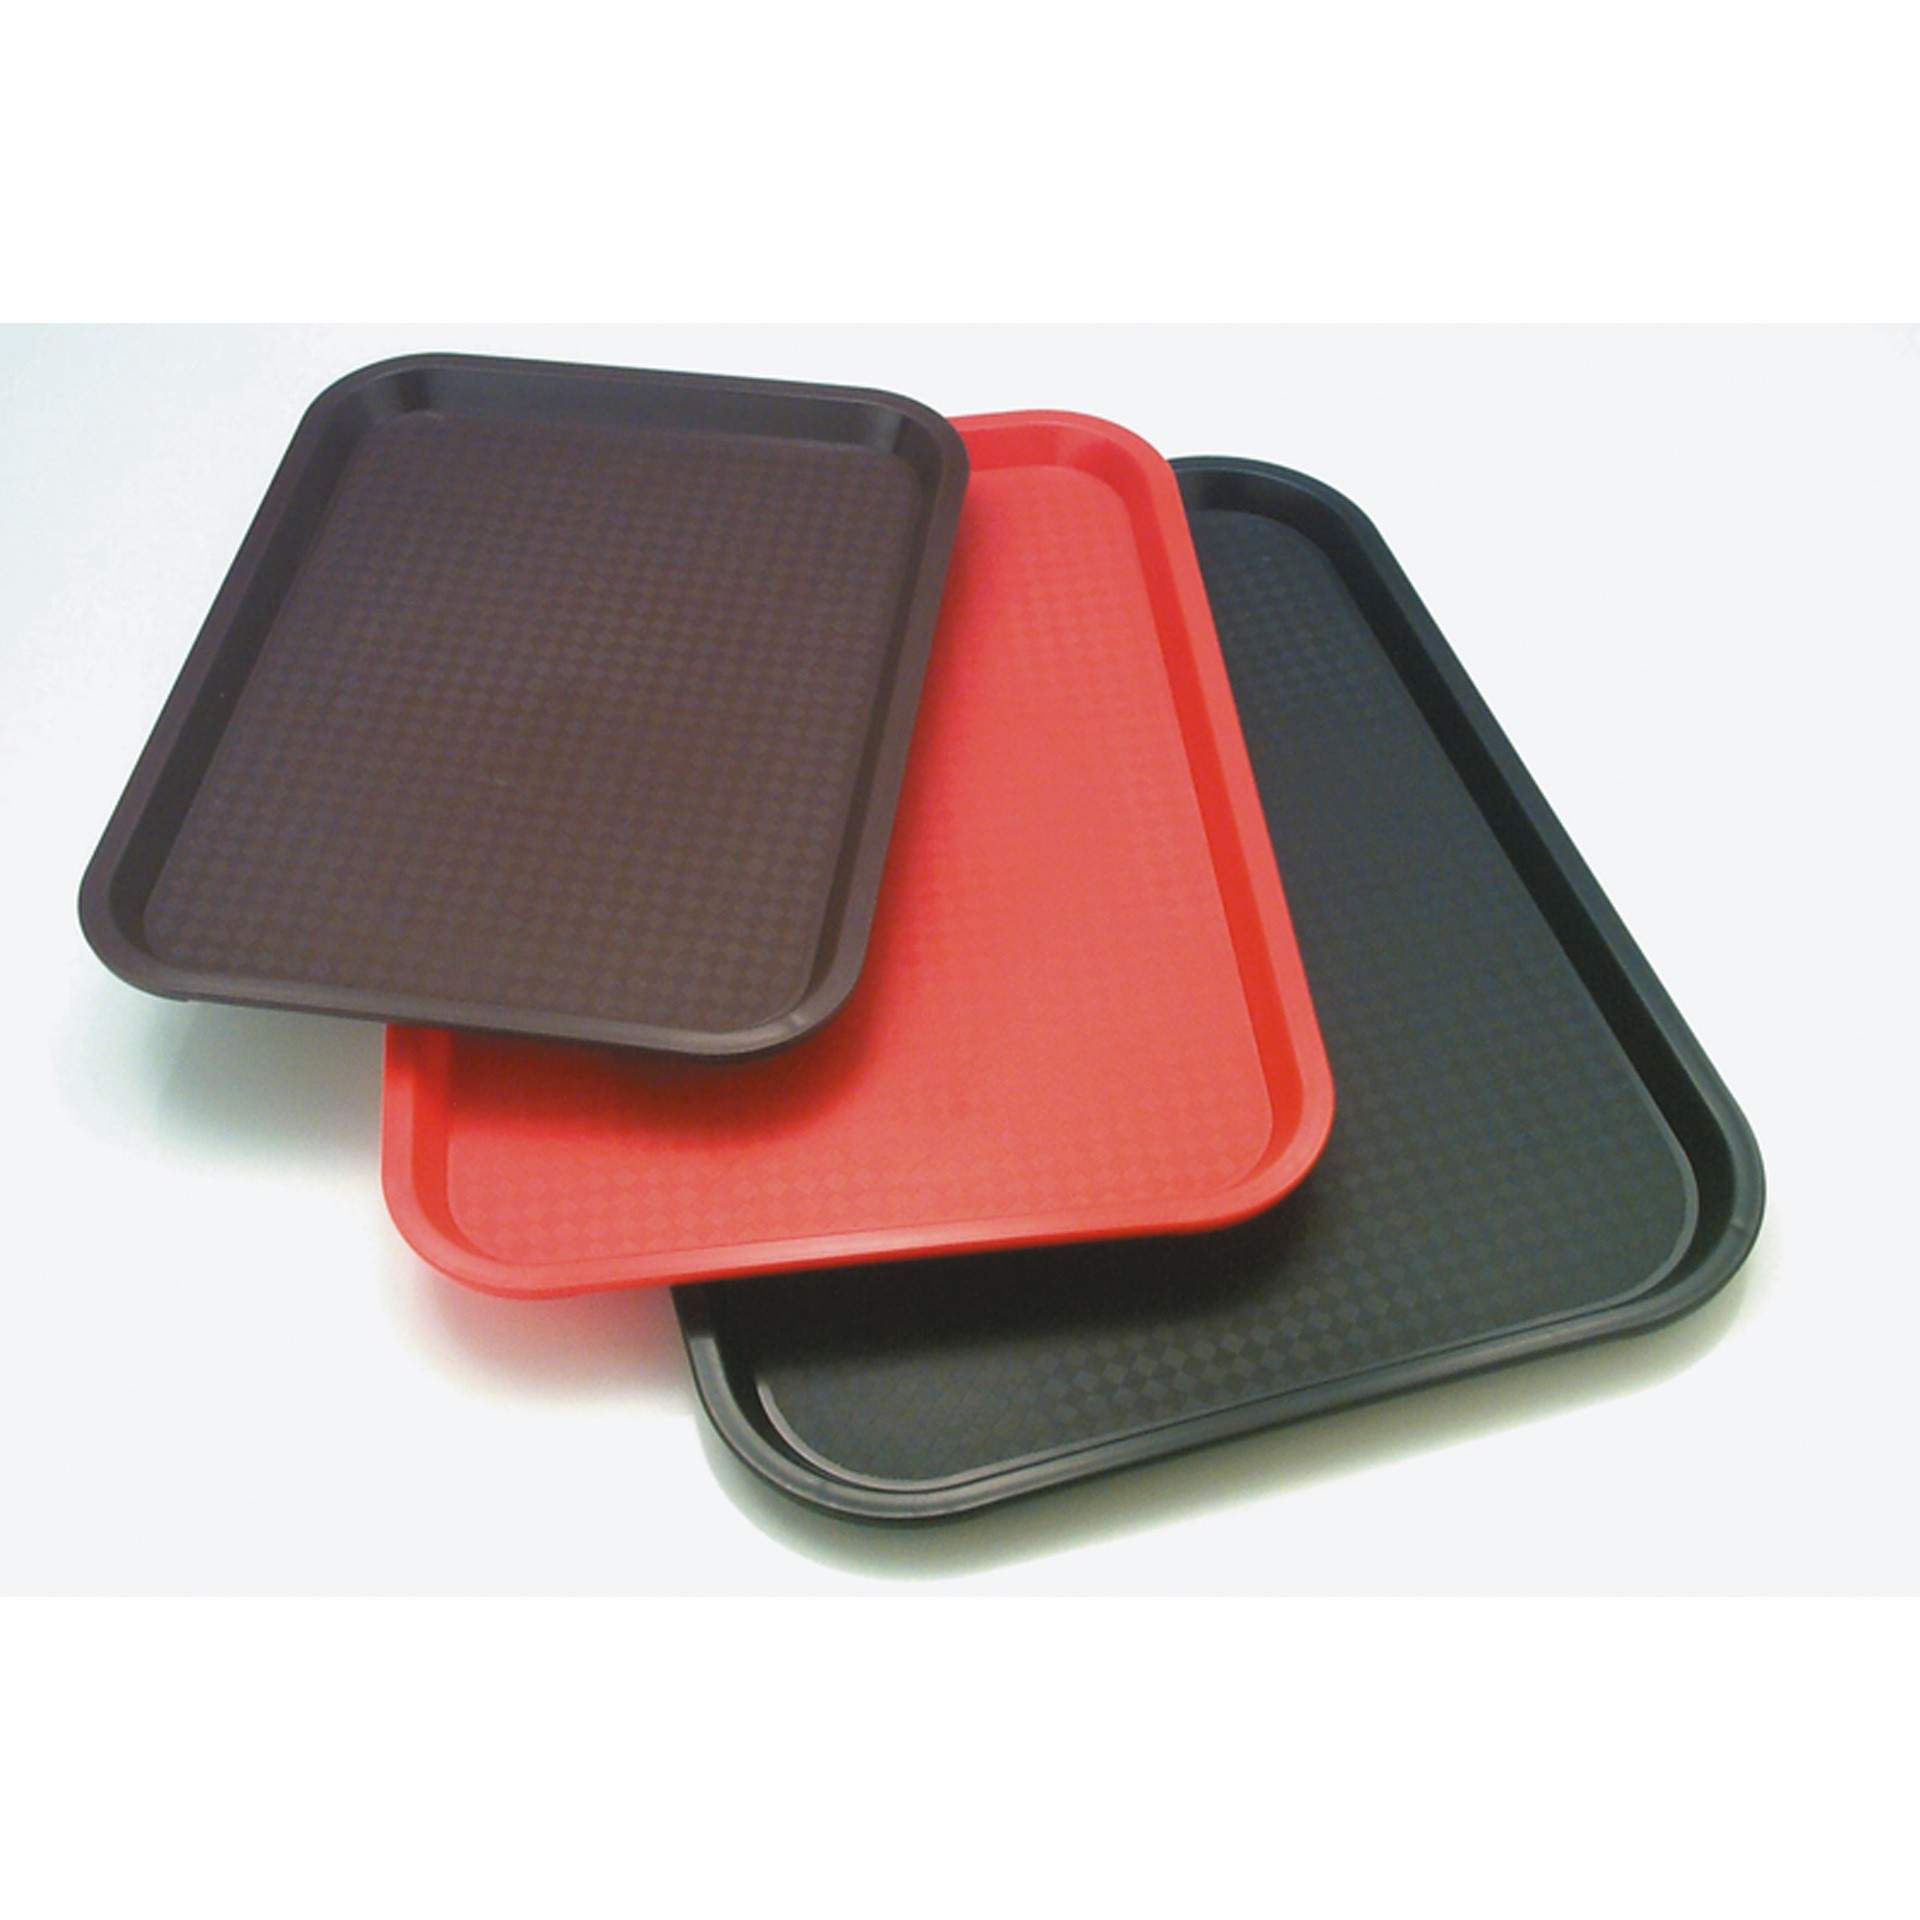 Tablett - rot - rechteckig - Abm. 41 x 30,5 cm - Polypropylen - 535-B